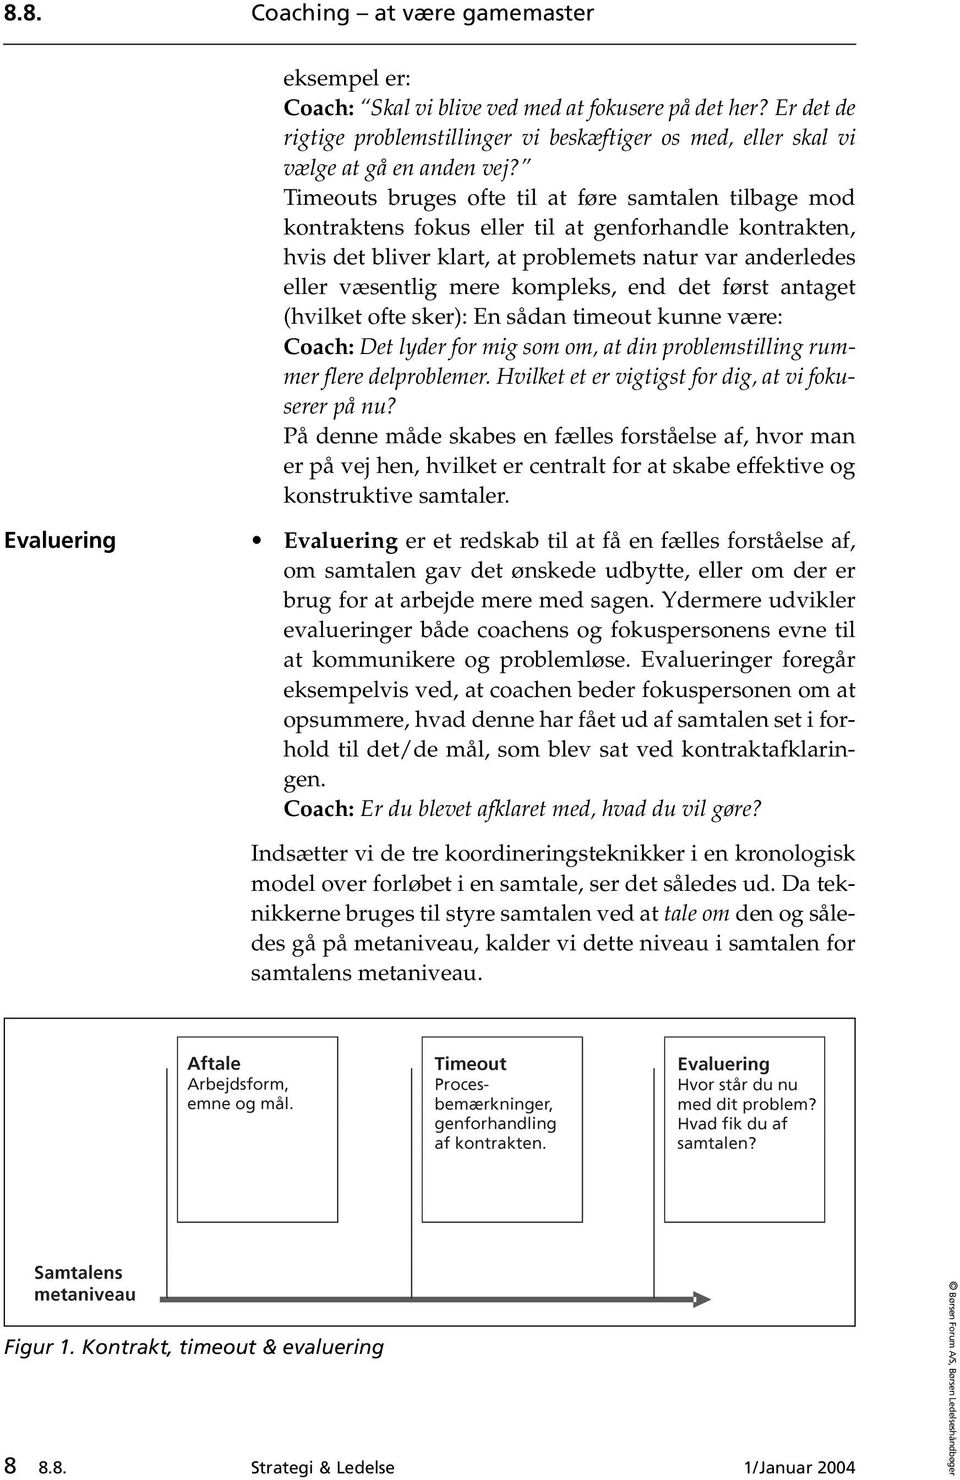 Coaching at være gamemaster - PDF Gratis download